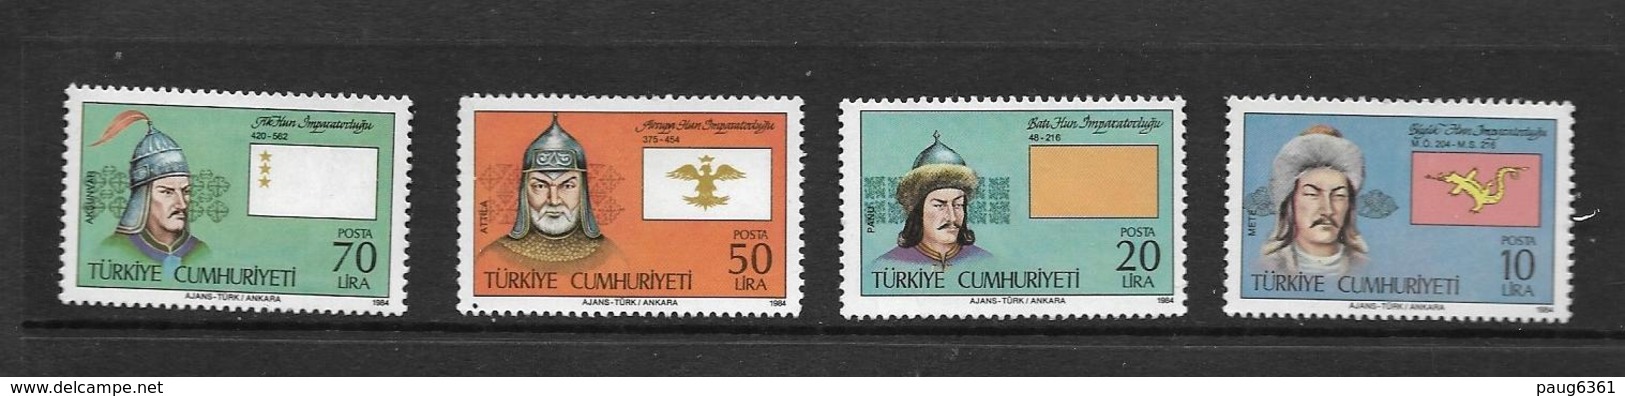 TURQUIE 1984 FONDATION DES ETATS TURCS  YVERT N°2391  NEUF MNH** - Unused Stamps